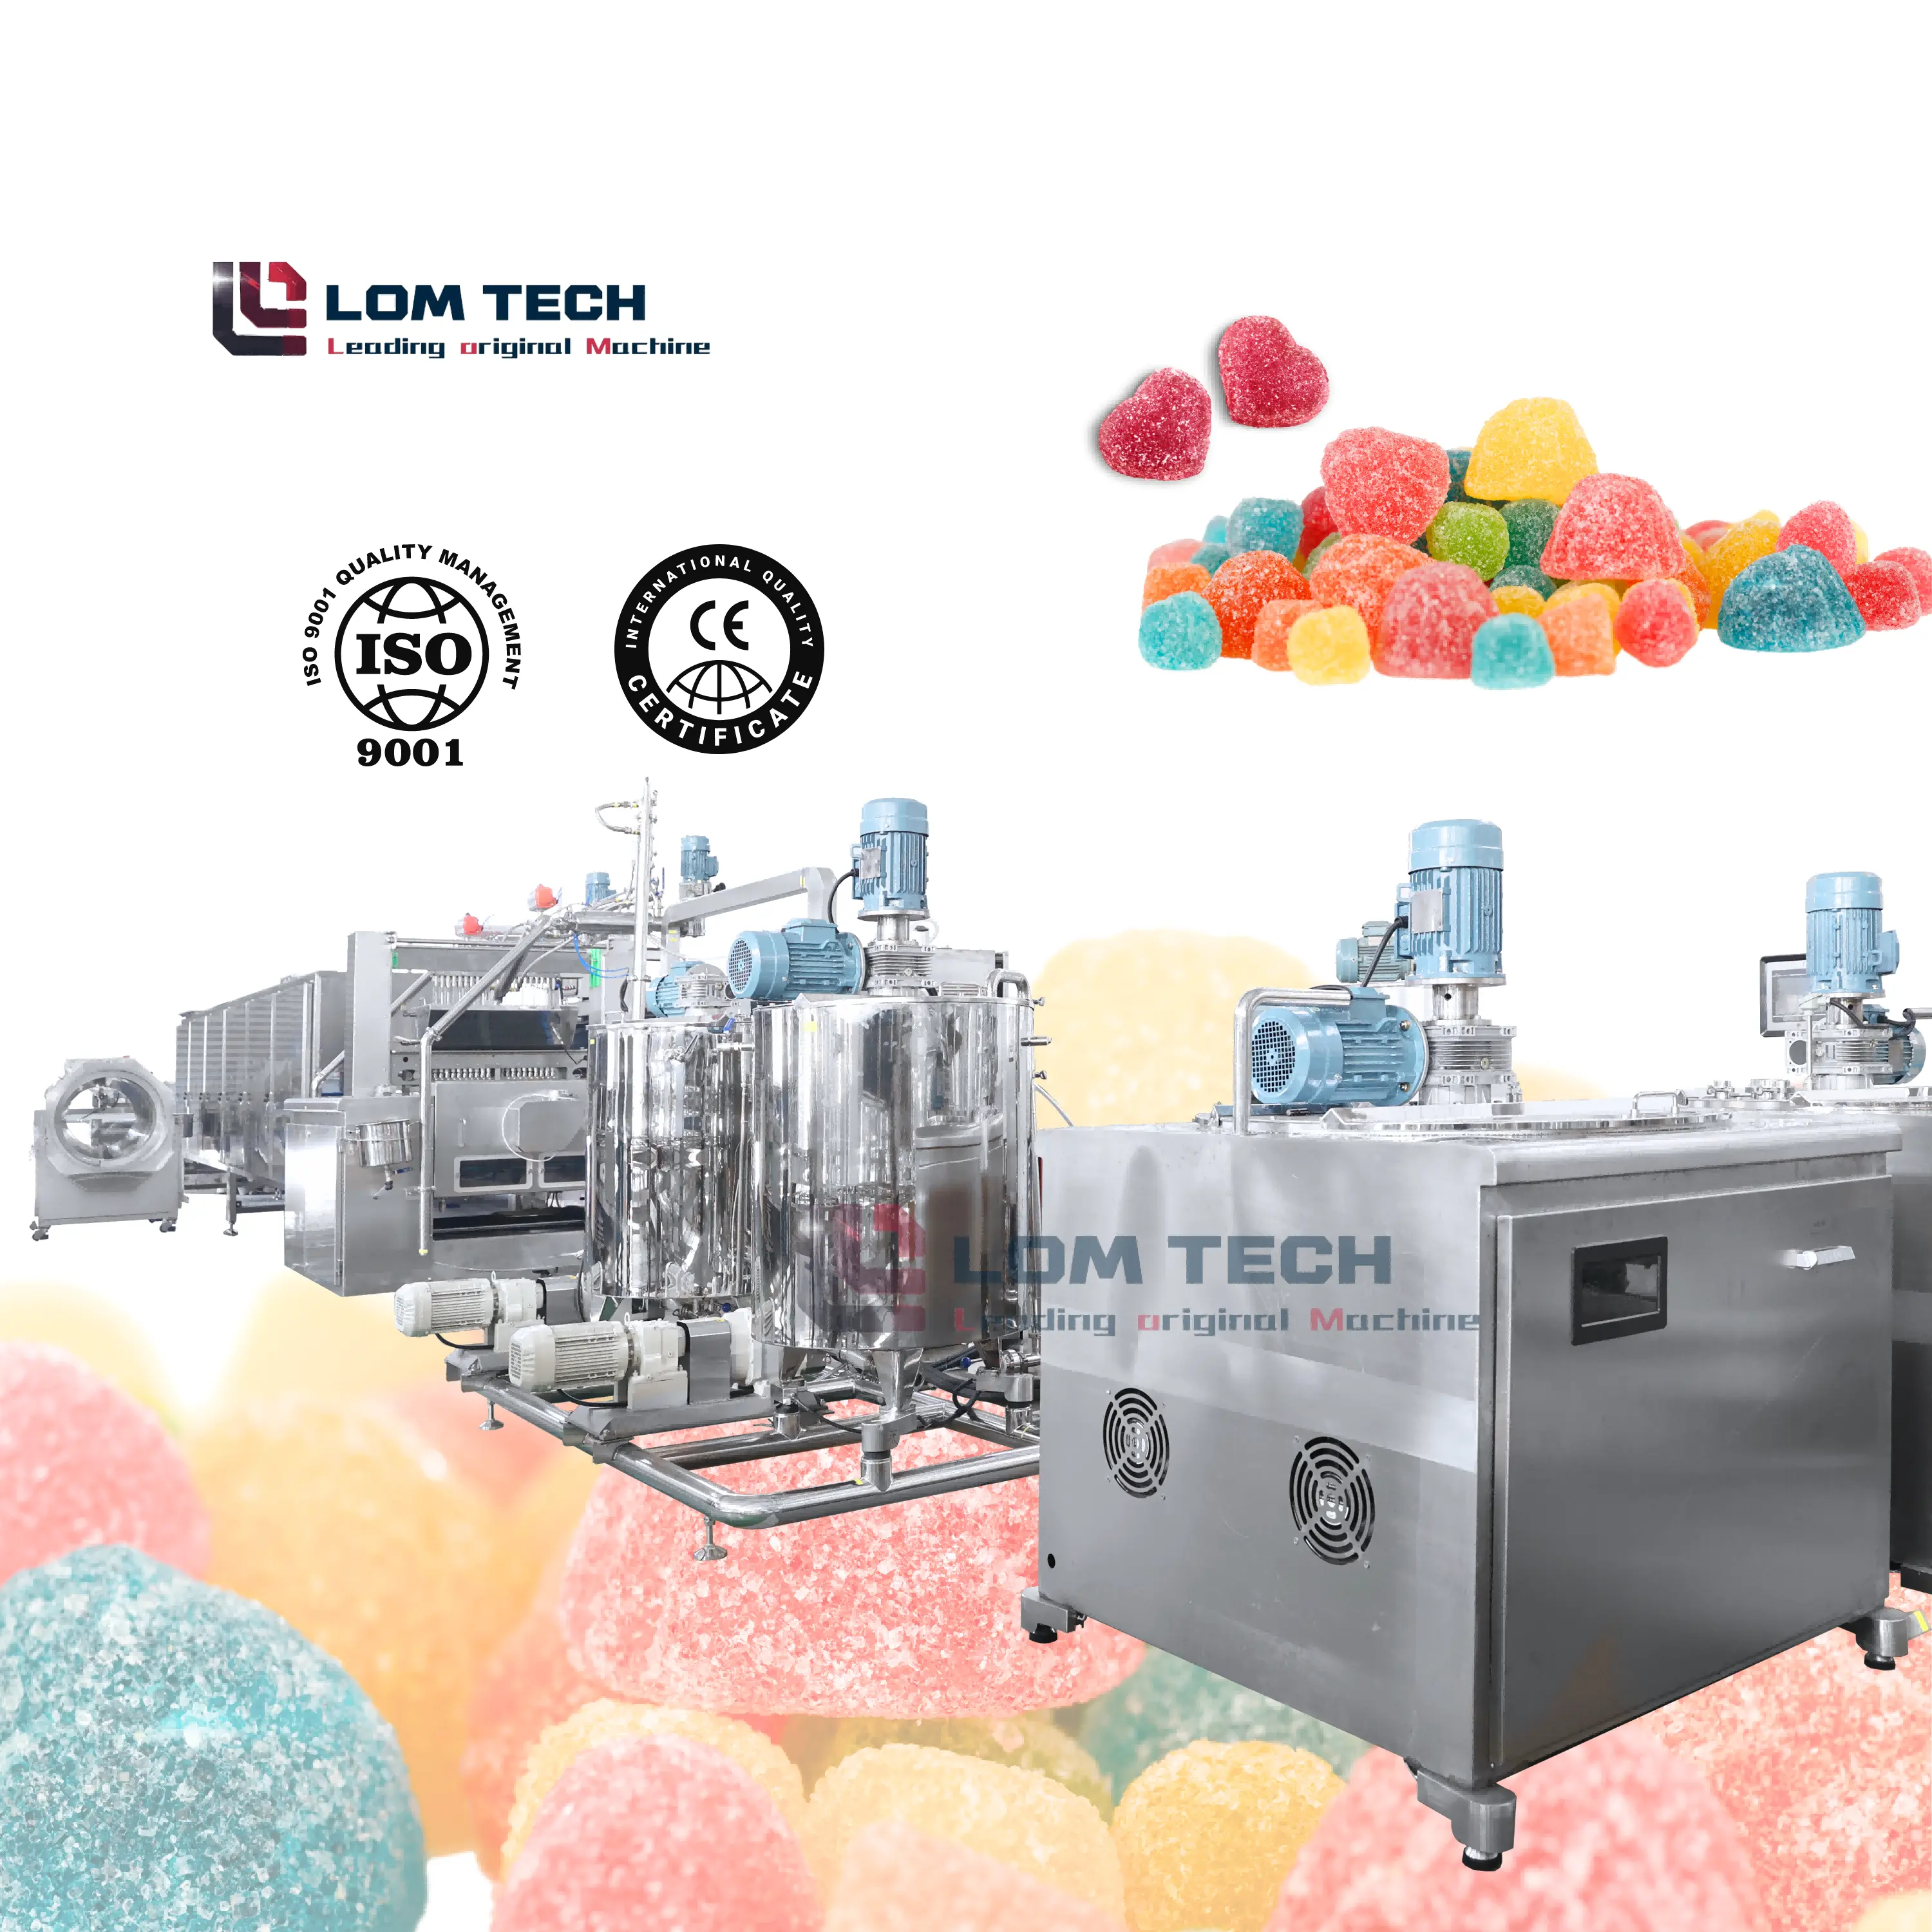 Máquina para hacer gomitas completamente automática LOM, gelatina comercial, pectina, gelatina, depositador de dulces suaves, línea de producción de gominolas Sleepy Bear